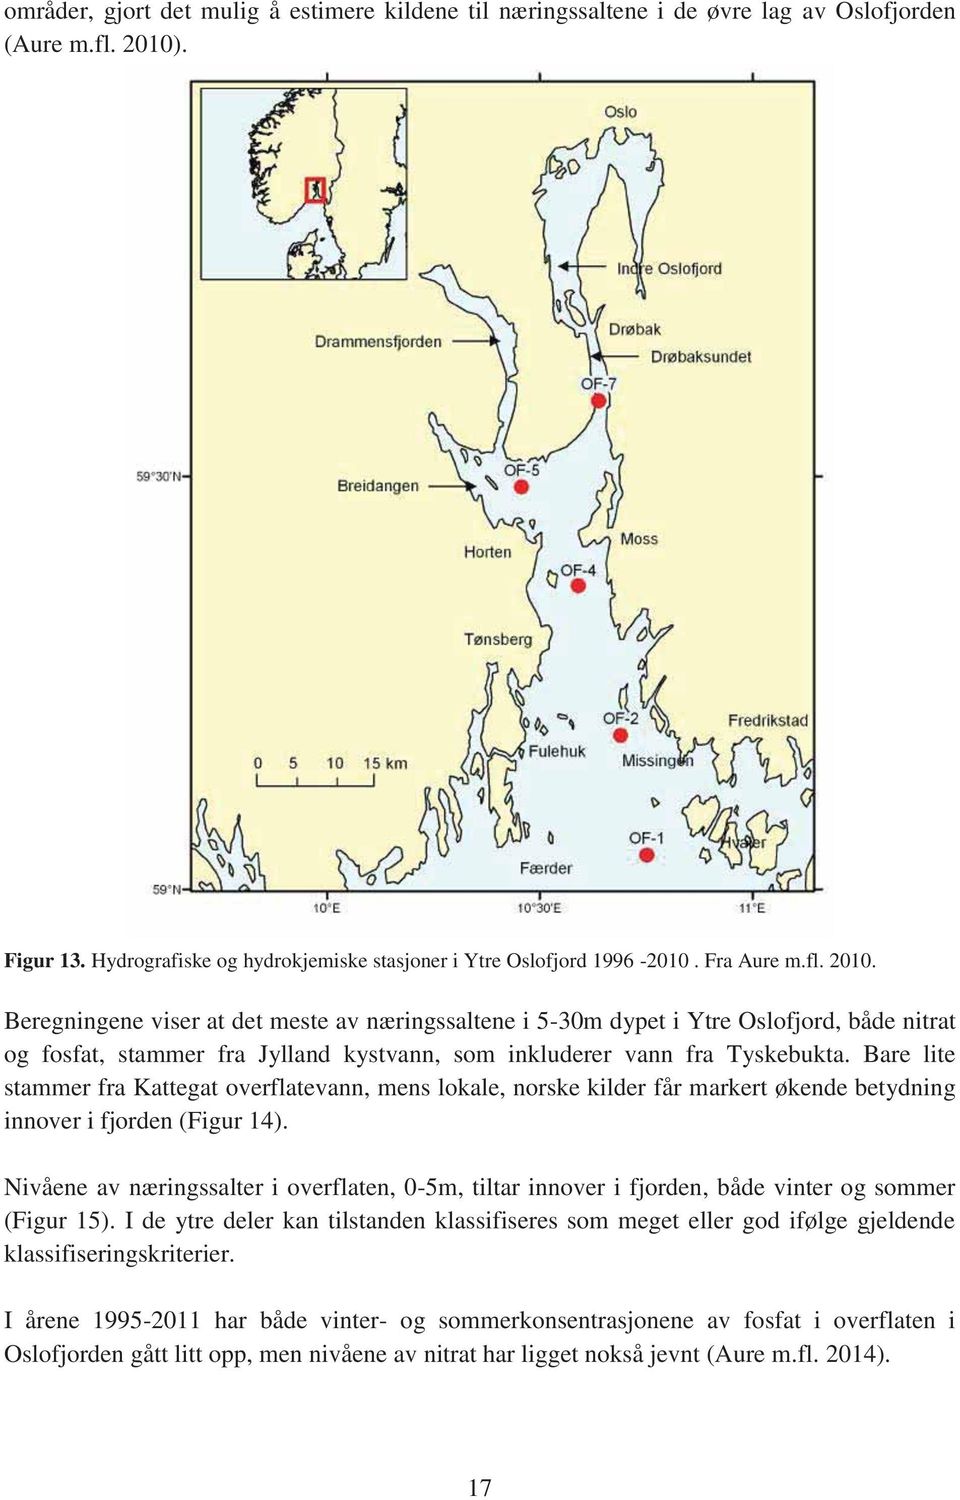 Bare lite stammer fra Kattegat overflatevann, mens lokale, norske kilder får markert økende betydning innover i fjorden (Figur 14).